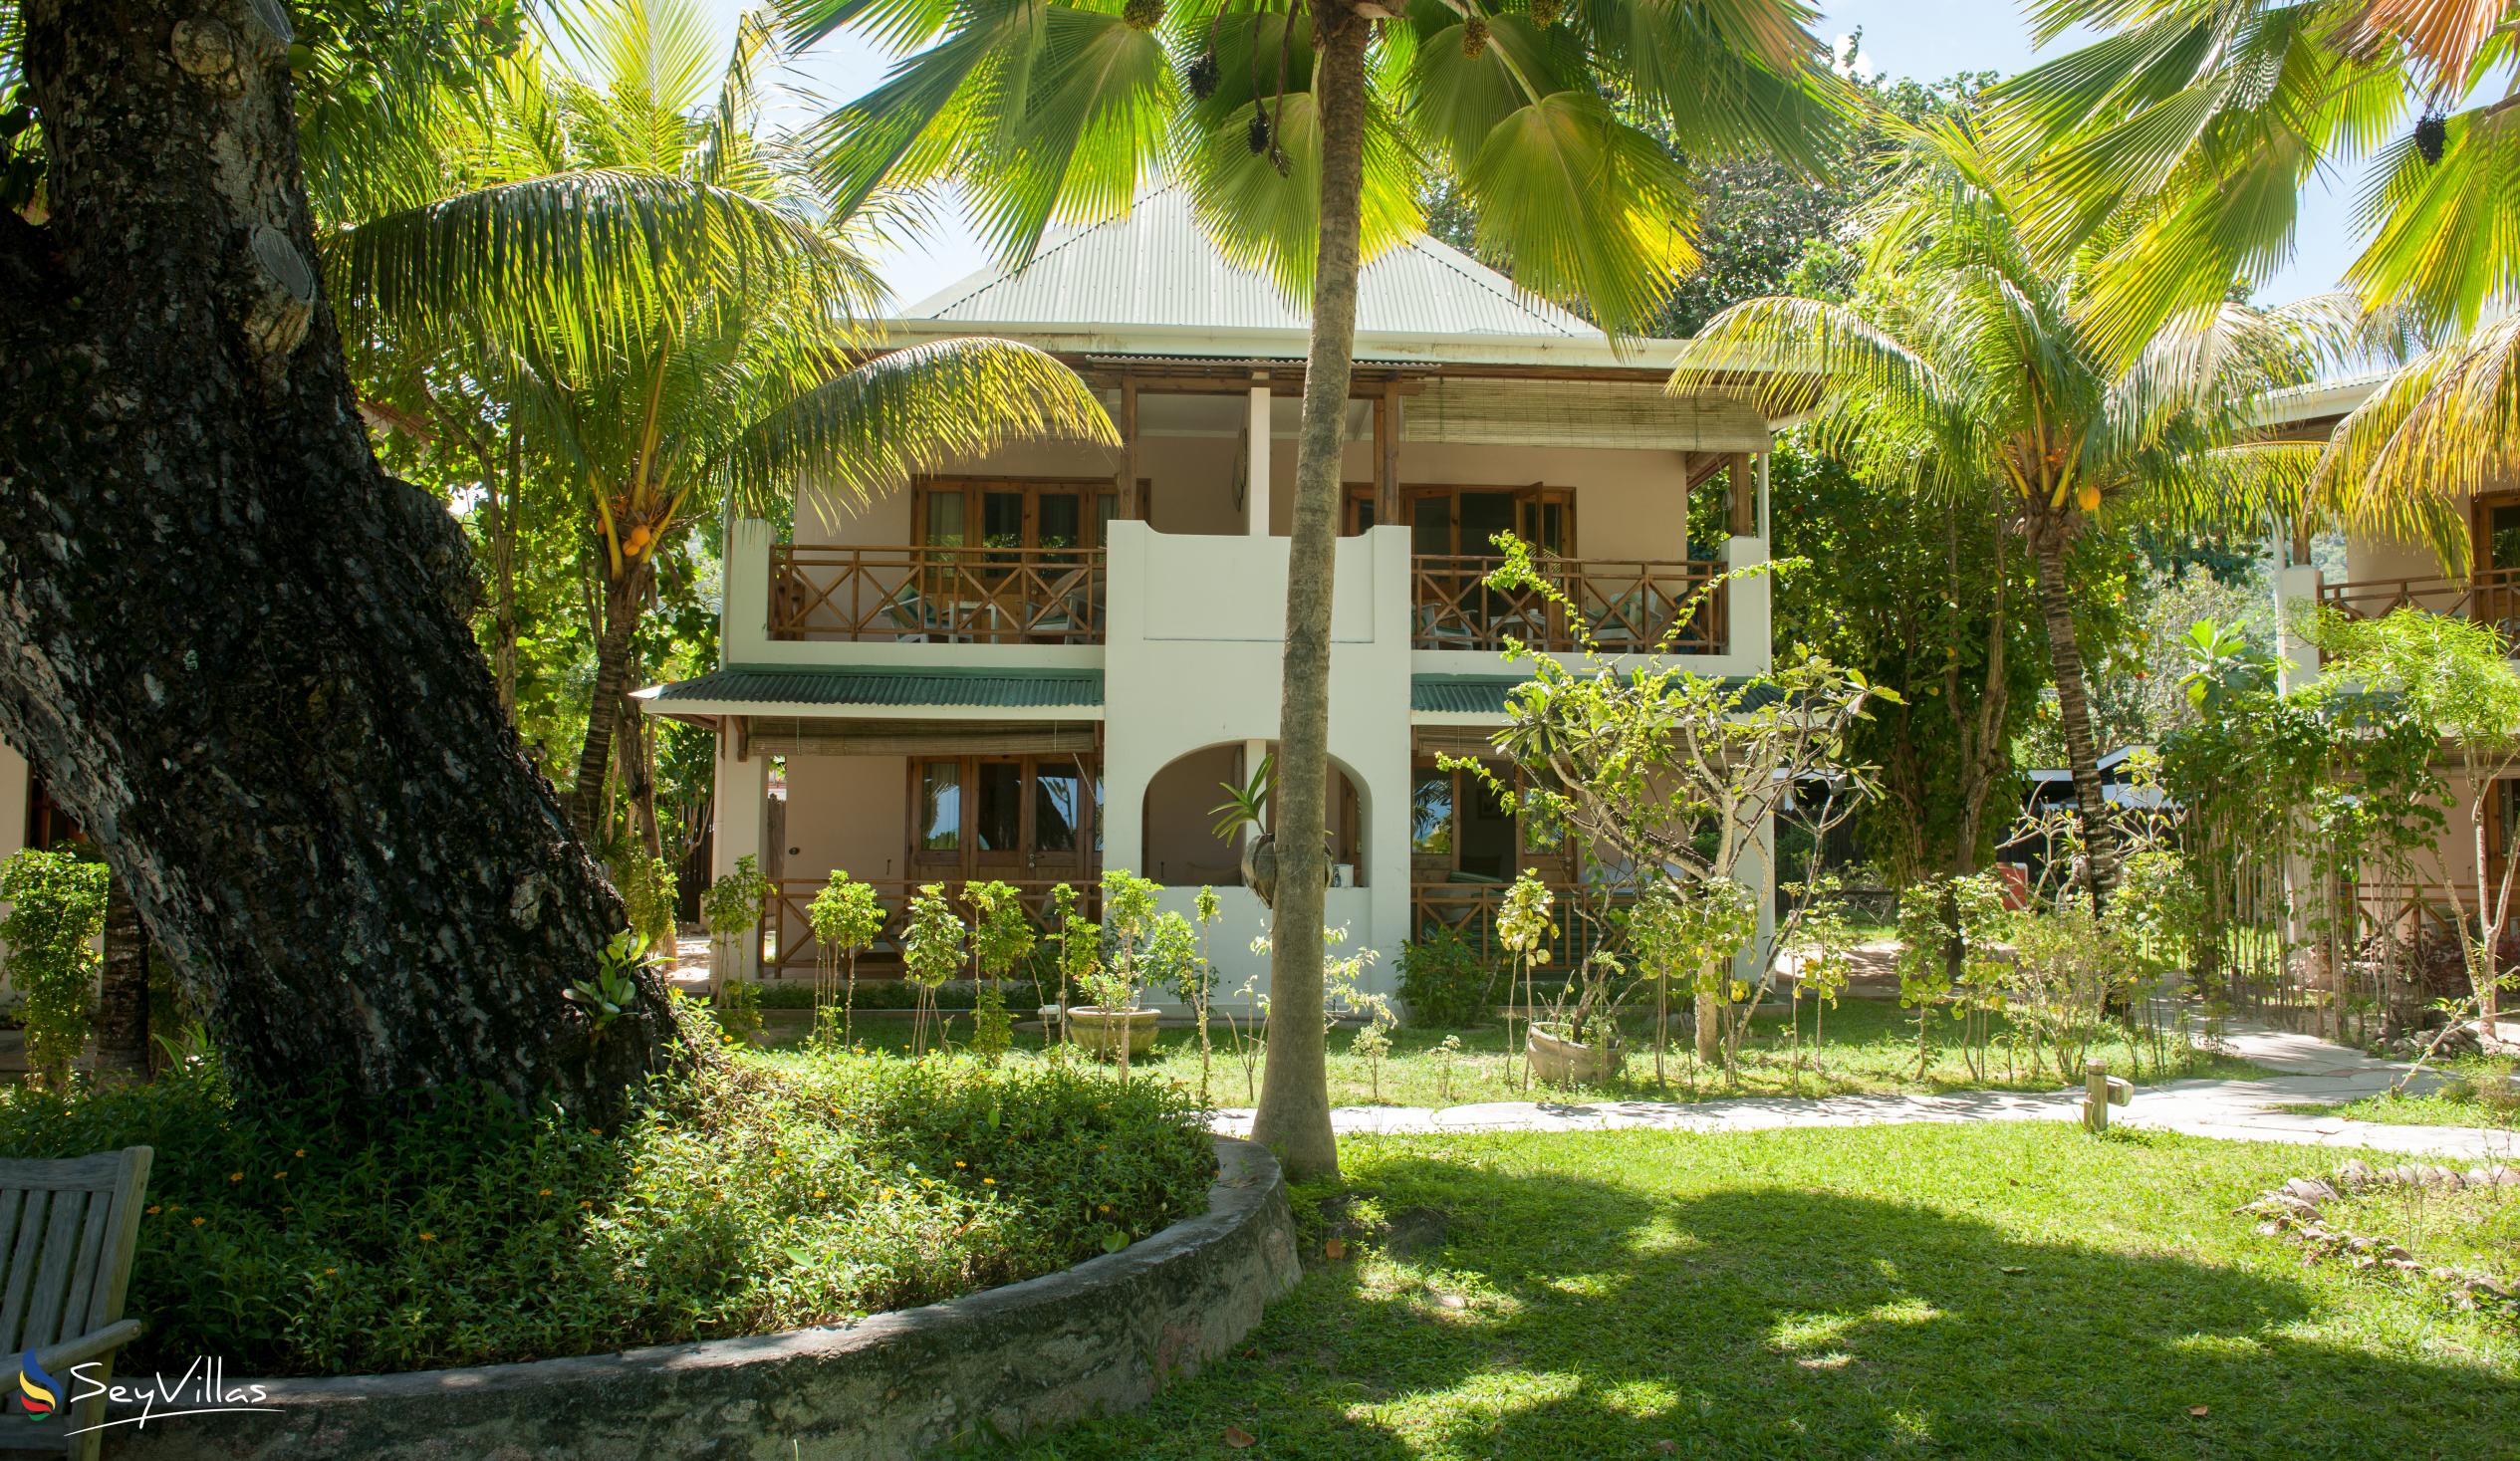 Foto 13: Indian Ocean Lodge - Aussenbereich - Praslin (Seychellen)